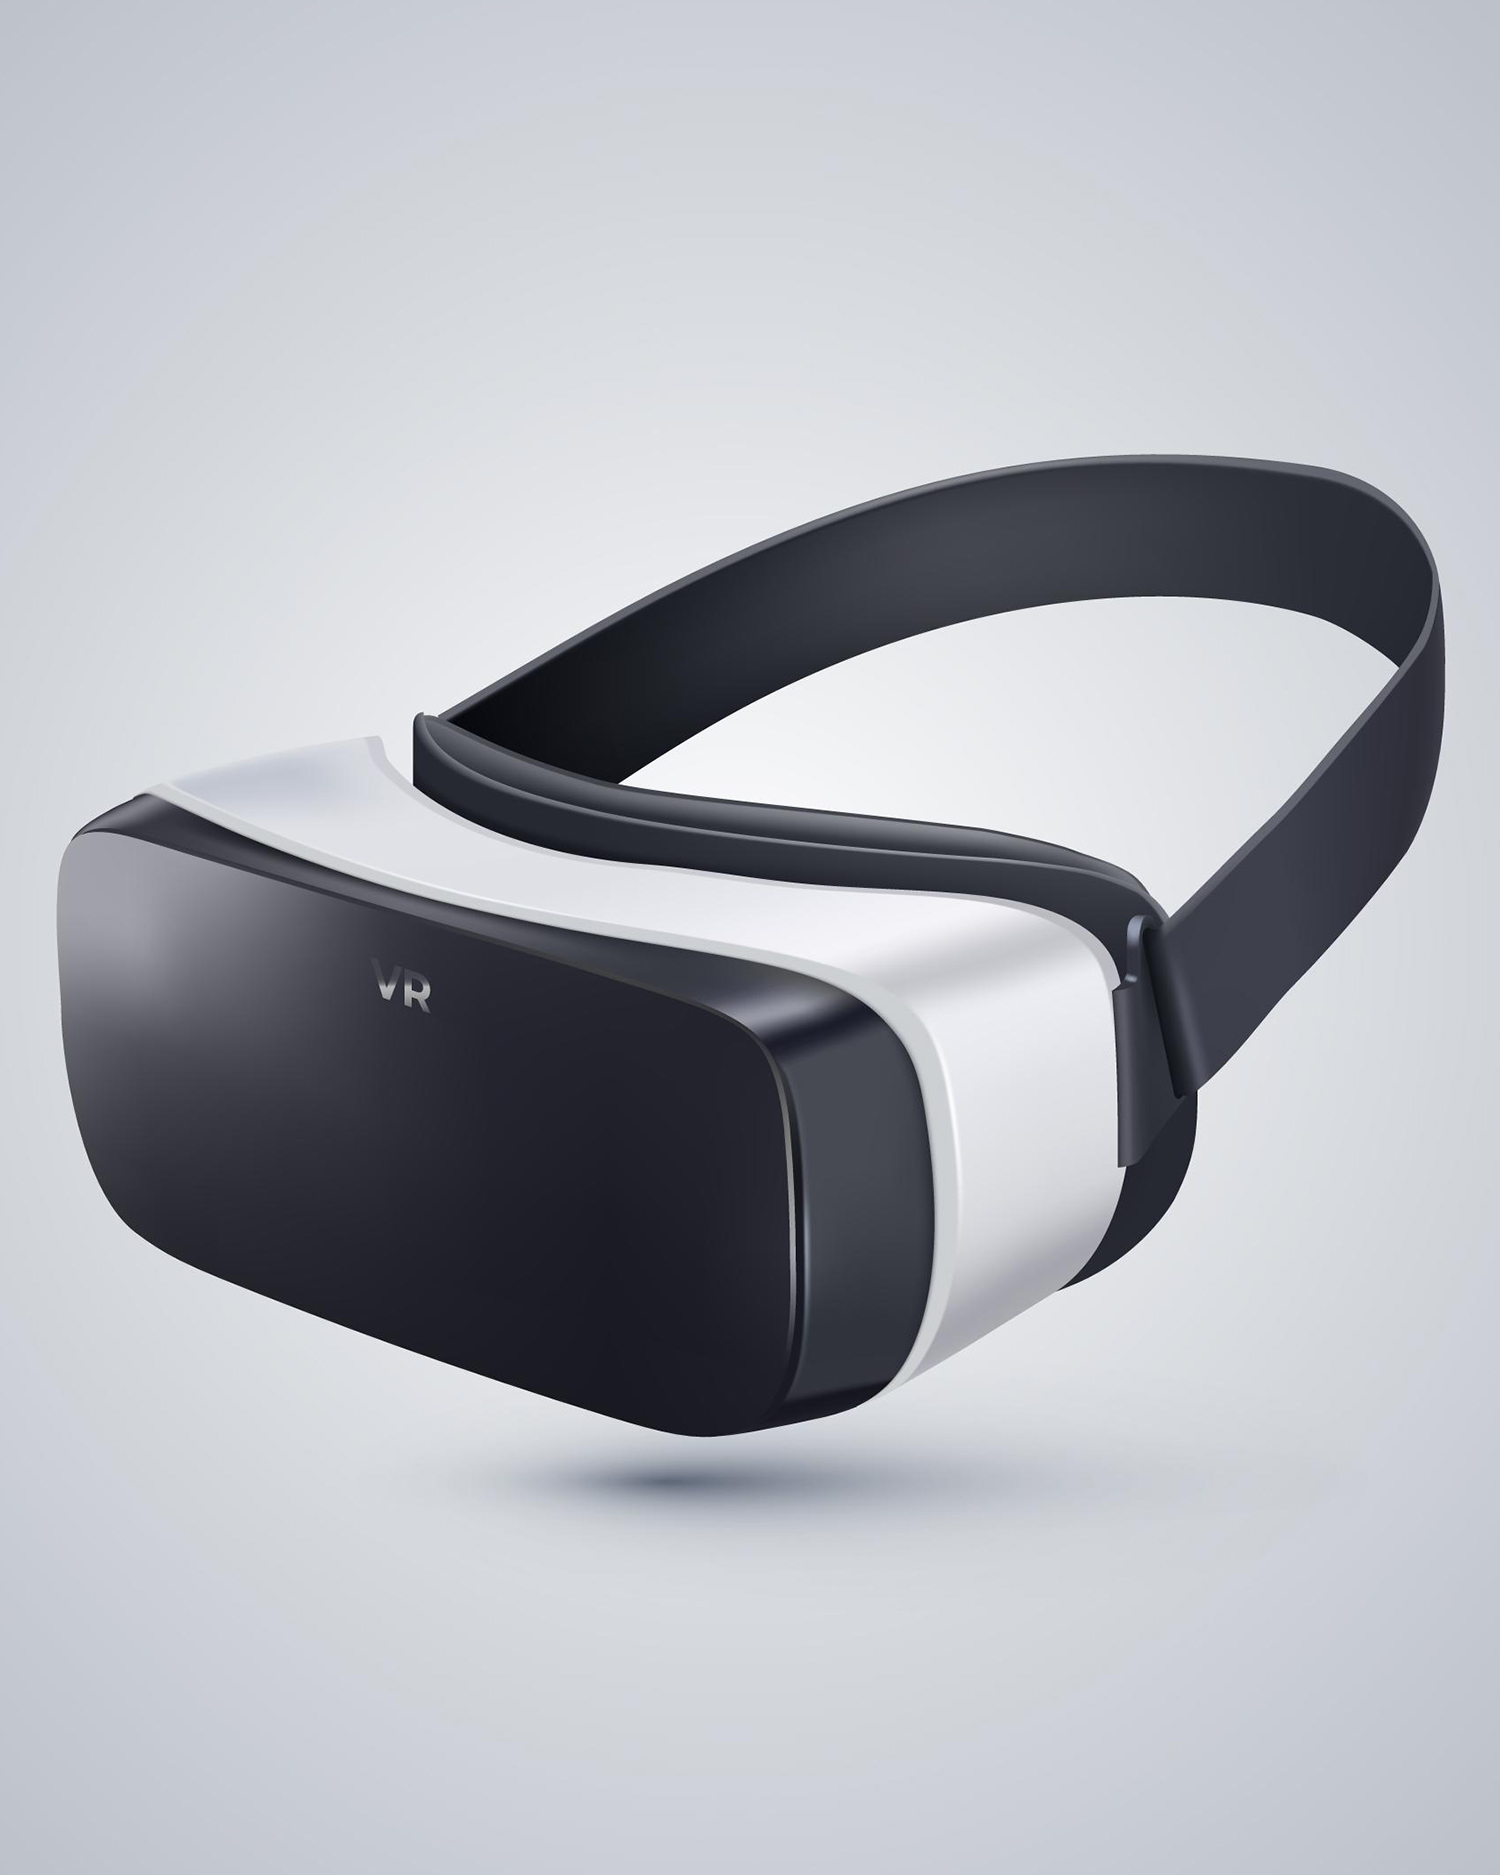 Demo-Artikel Elektronik VR-Brille weiß/schwarz erweiterte Preise mit Streichpreis